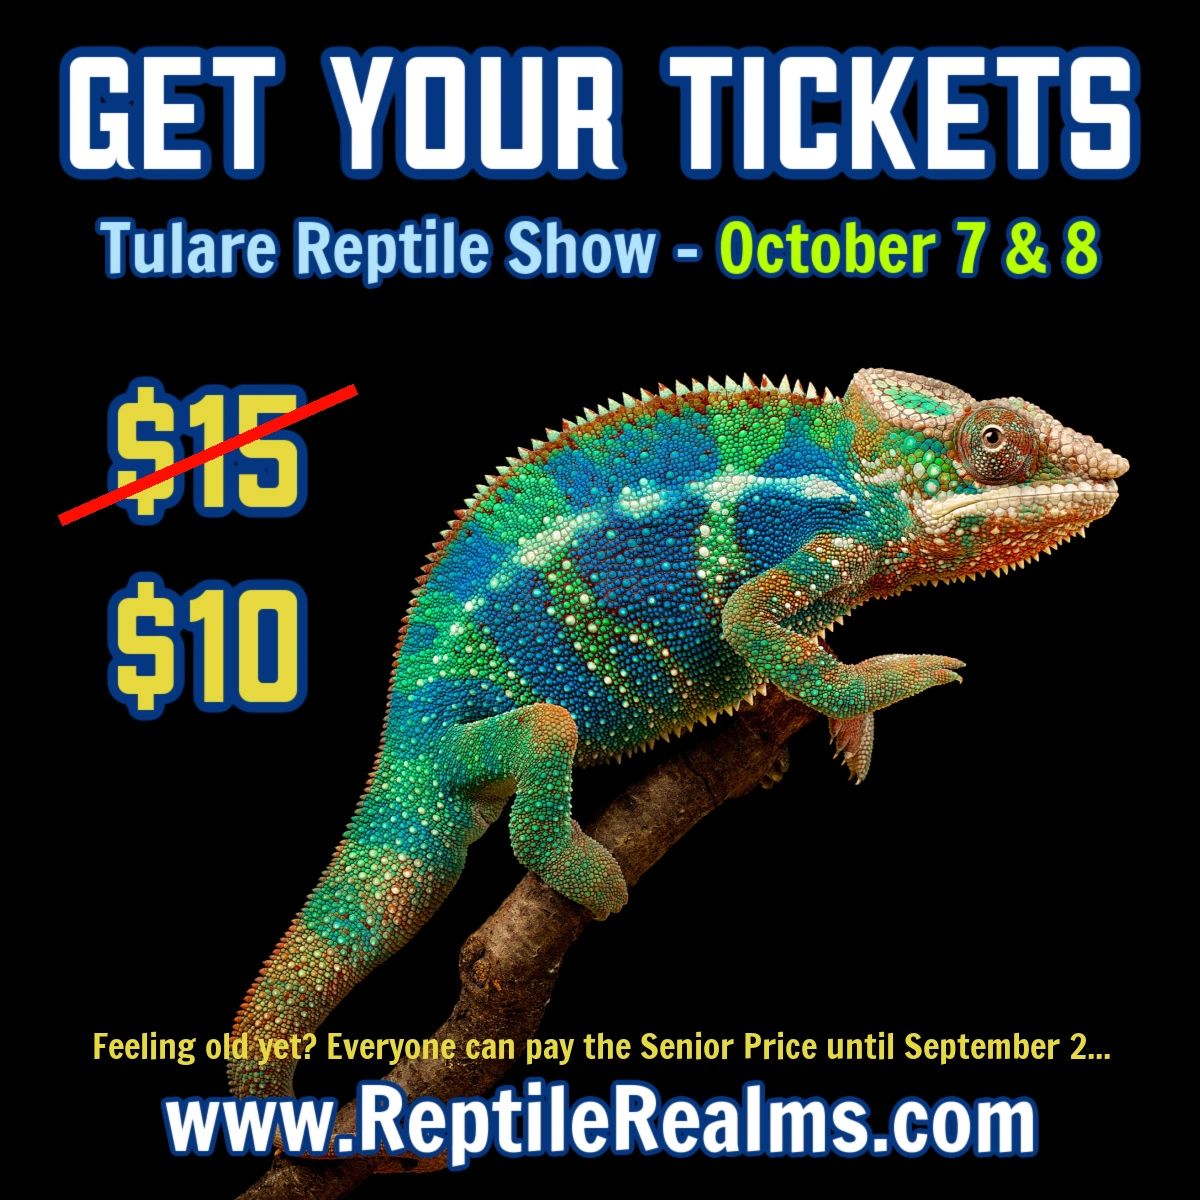 Reptile Realms Bay Area Reptile Expos